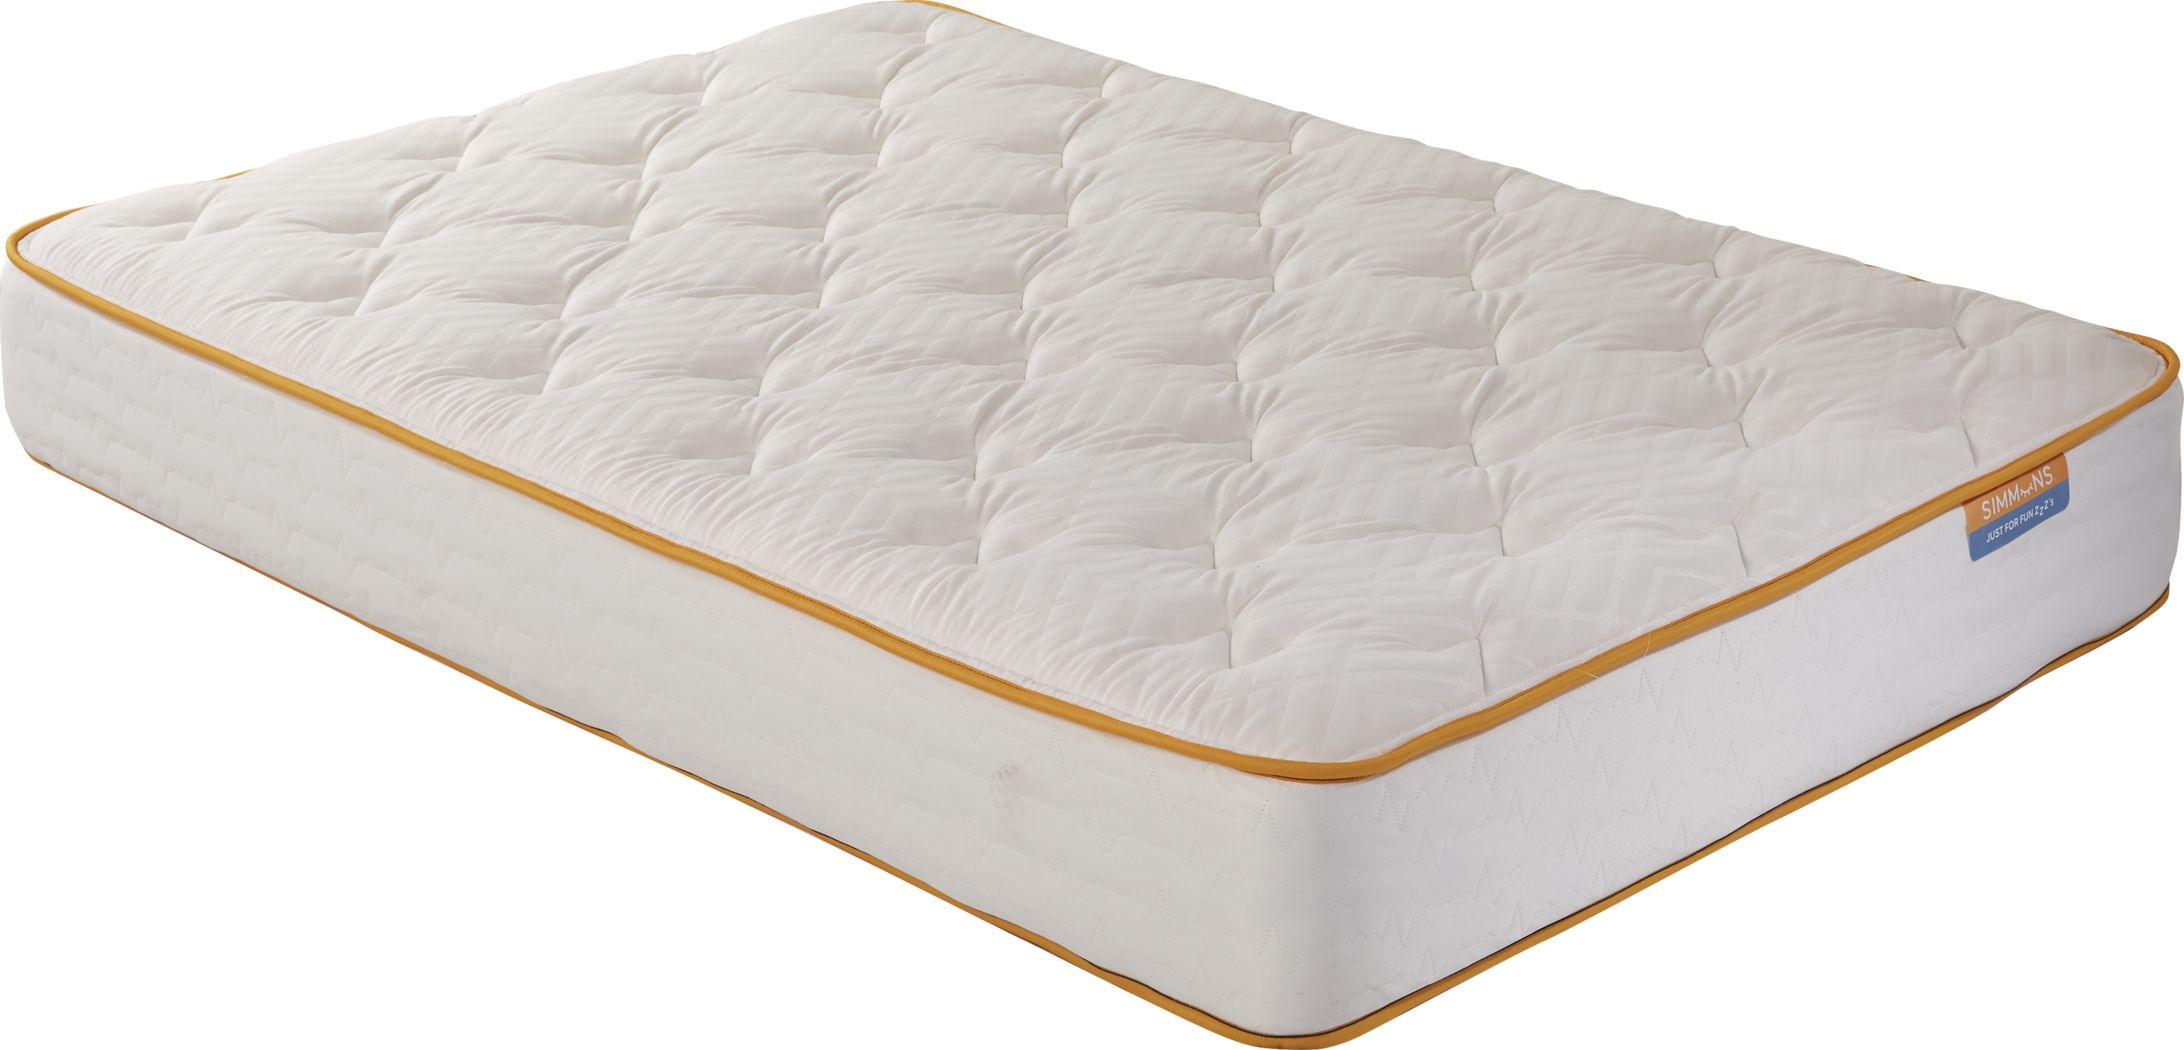 simmons beautyrest full xl mattress